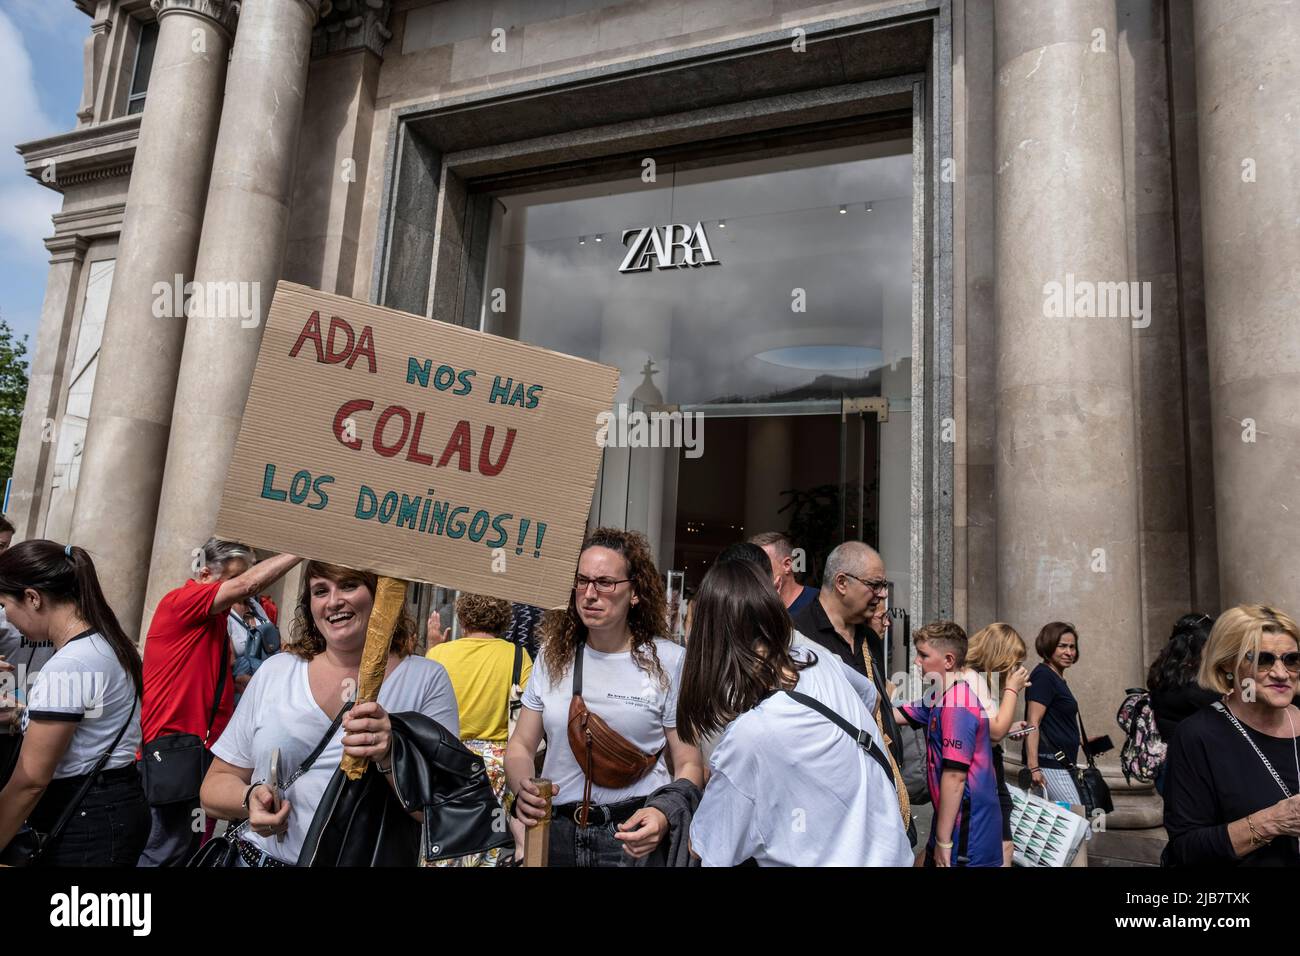 Un manifestante es visto frente a la puerta de Zara sosteniendo un cartel  acusando al Alcalde Ada Colau de haber ratificado el nuevo horario de  trabajo para los domingos durante la manifestación.